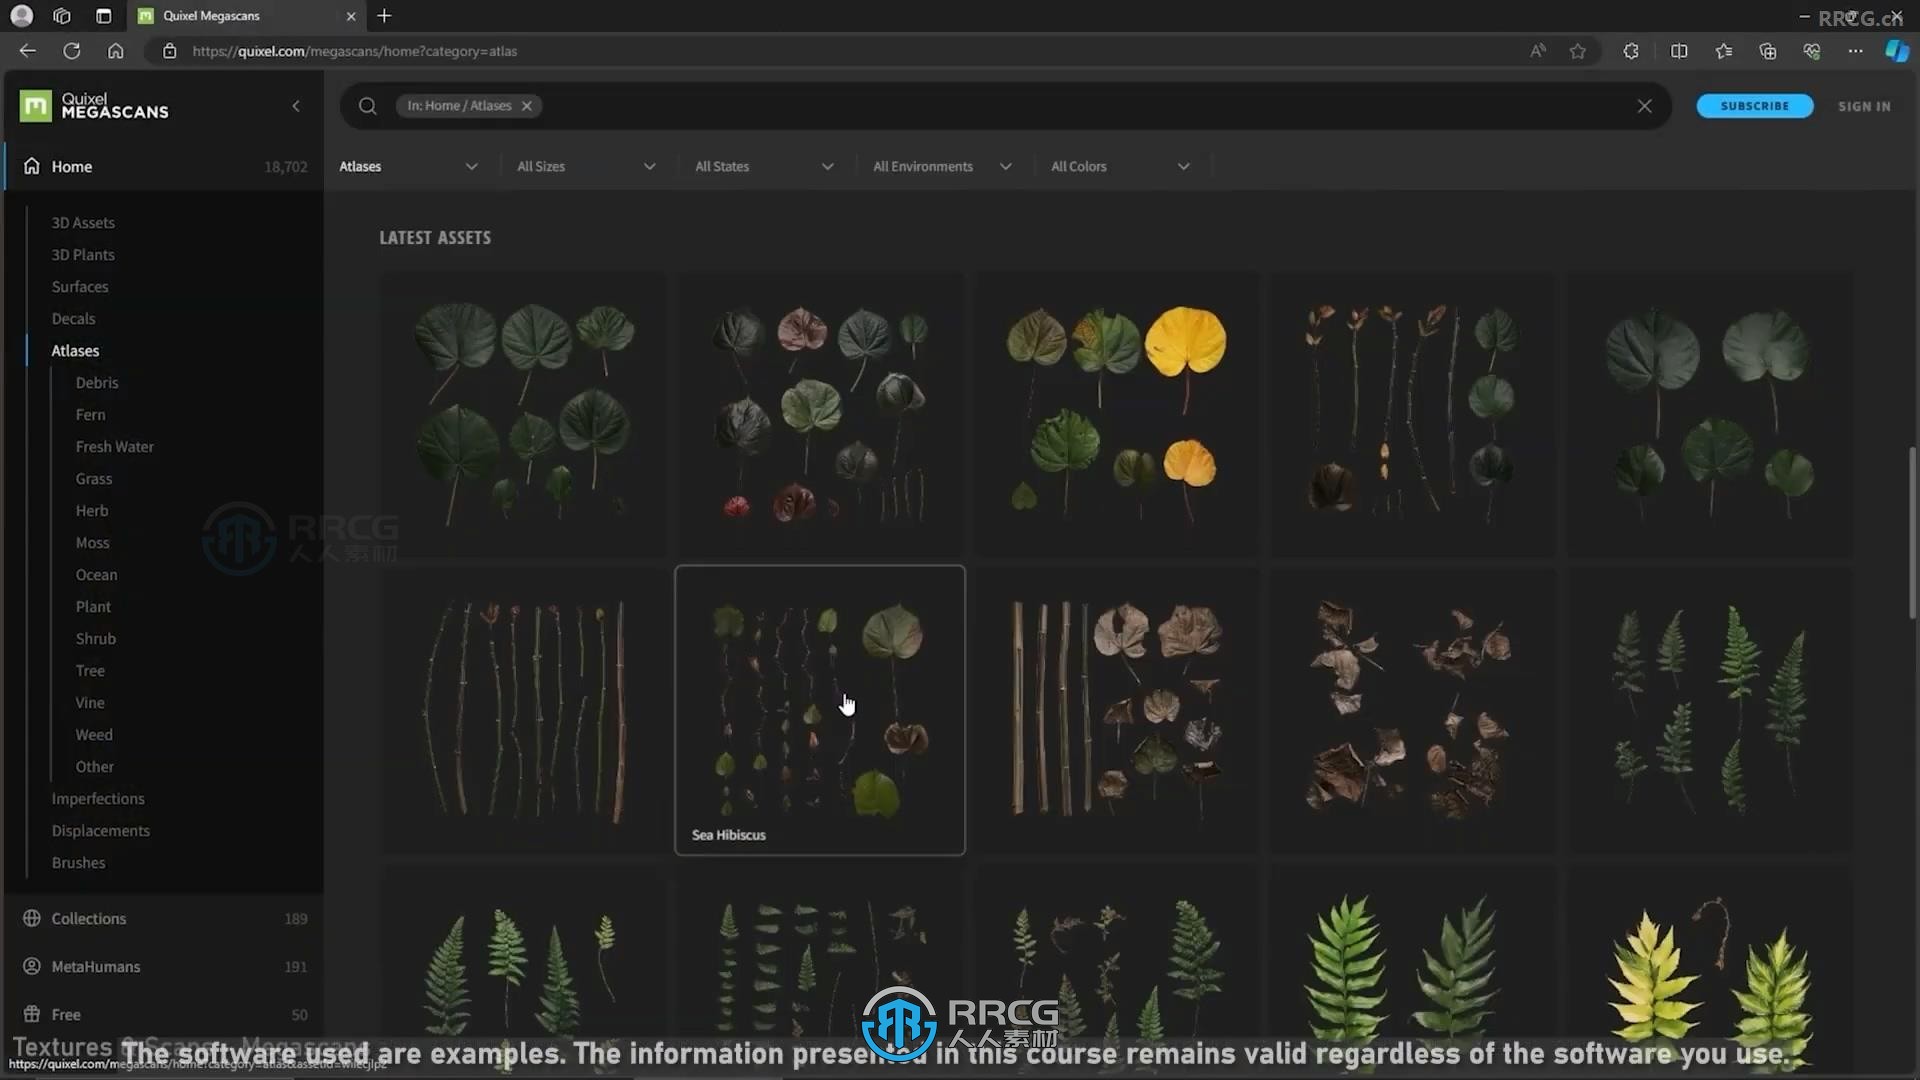 UE5虚幻引擎植物植被制作基础核心技术视频教程